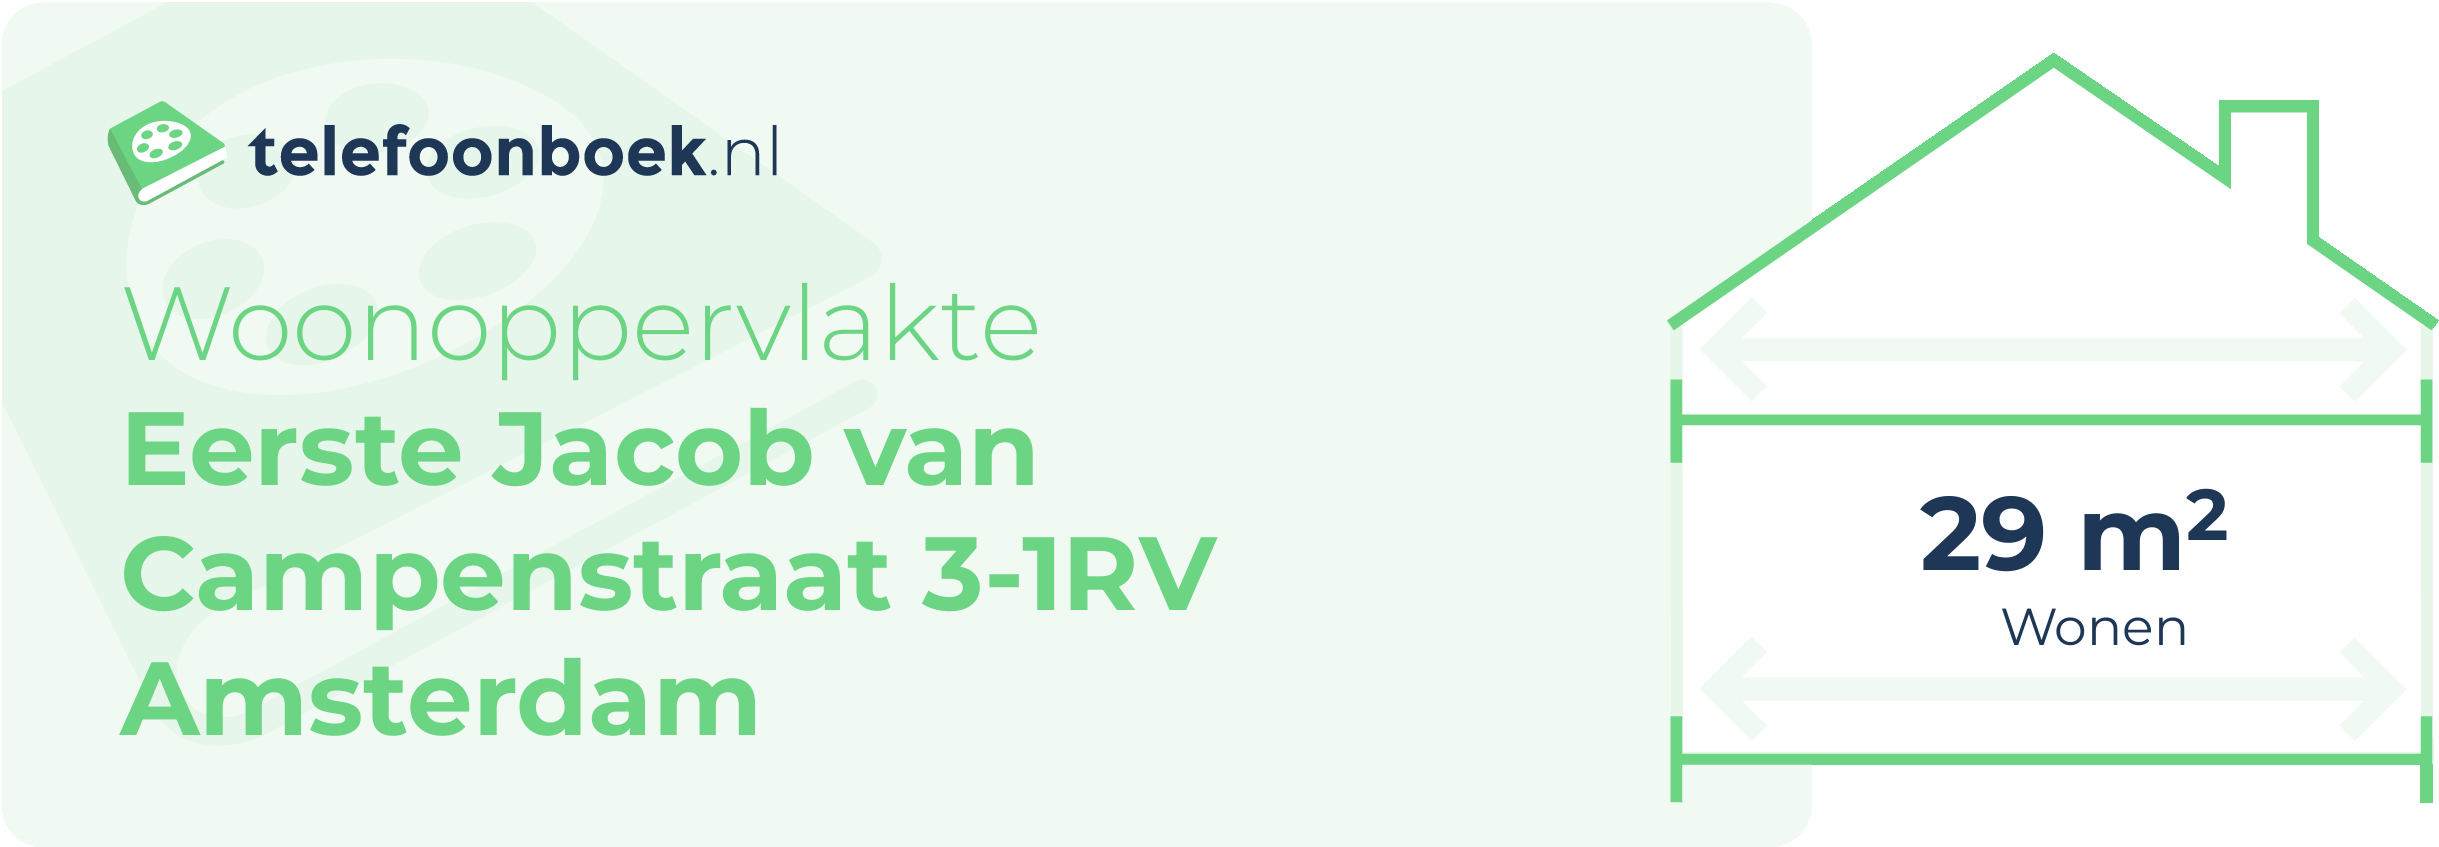 Woonoppervlakte Eerste Jacob Van Campenstraat 3-1RV Amsterdam